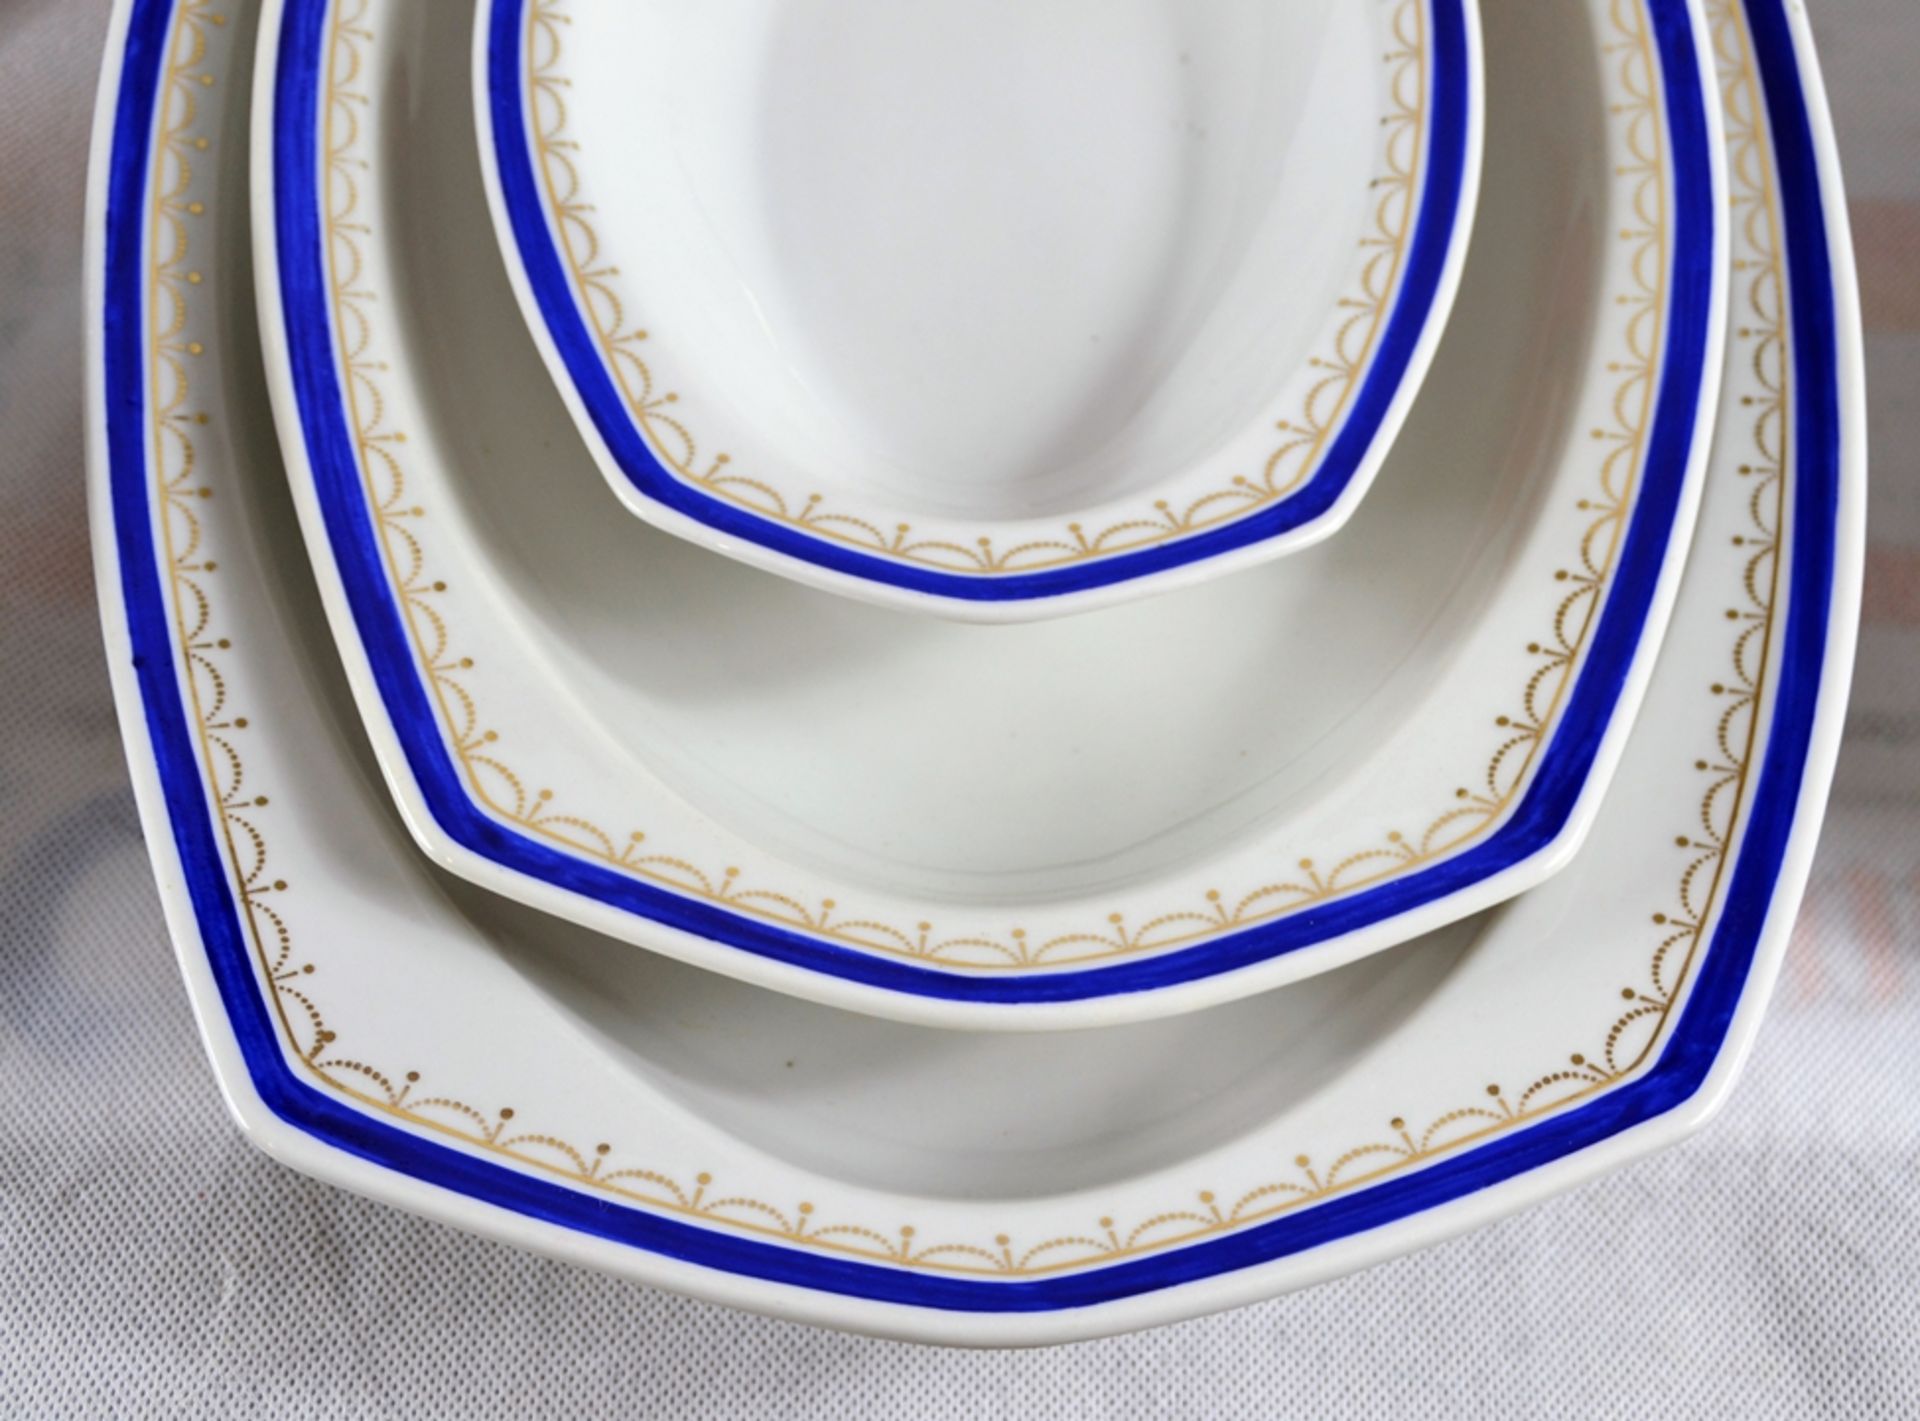 Porzellan Speiseservice blau goldener Rand handbemalt ca. 42 teilig um 1900, 2 Saucieren, 3 Platten - Bild 3 aus 3